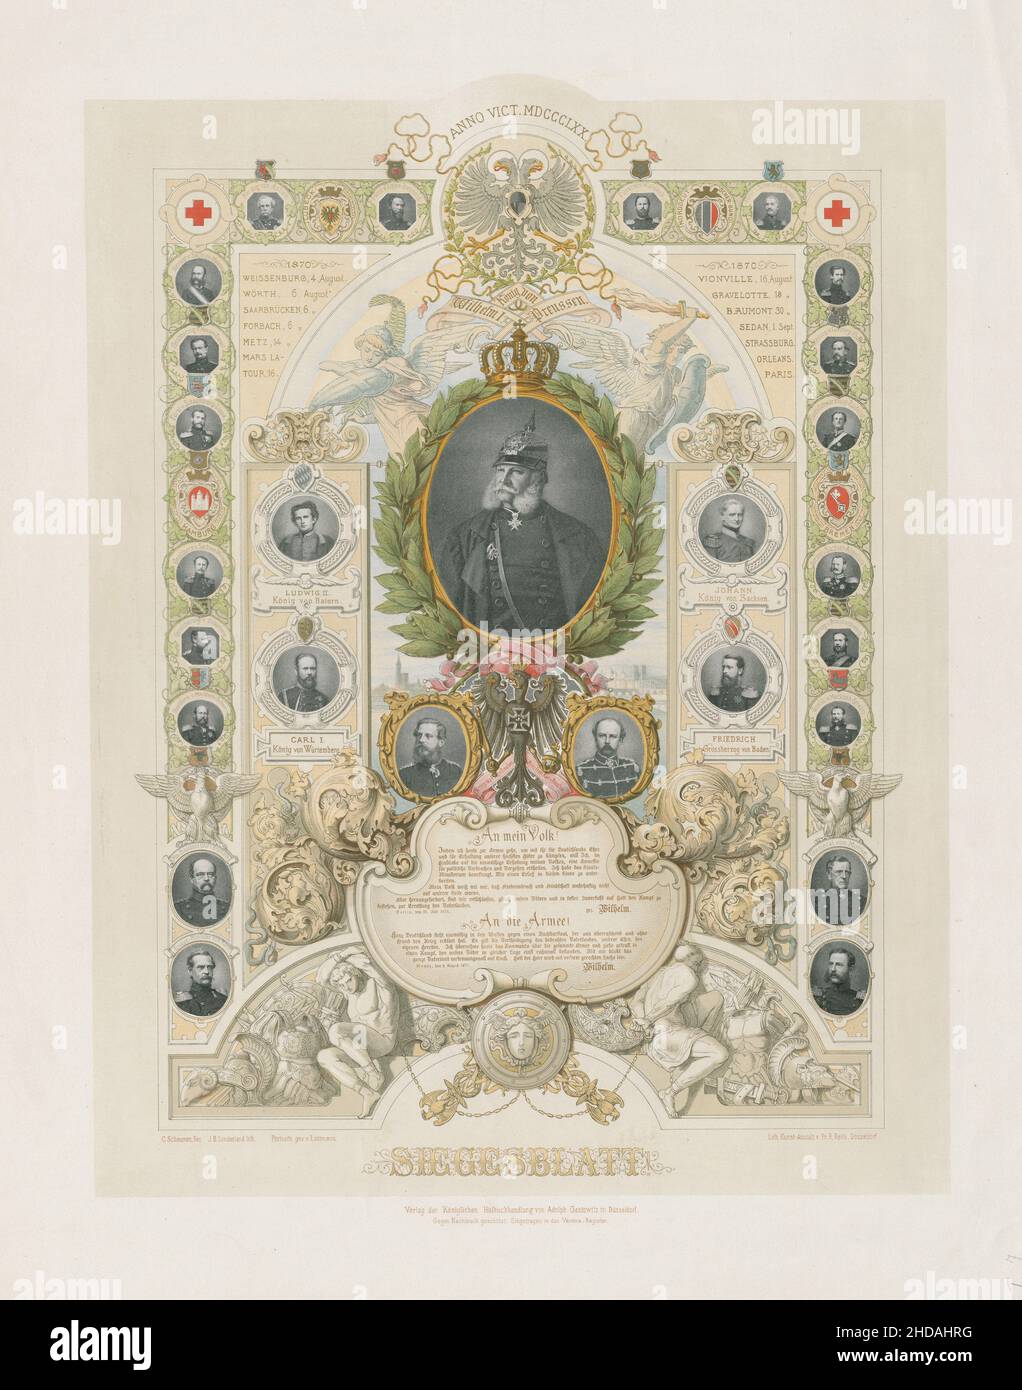 Litografia tedesca: Scheda di vittoria! 1870 Una litografia raffigurante la vittoria della Germania (Prussia) nella guerra franco-prussiana del 1870-1871. Ludovico II koni Foto Stock